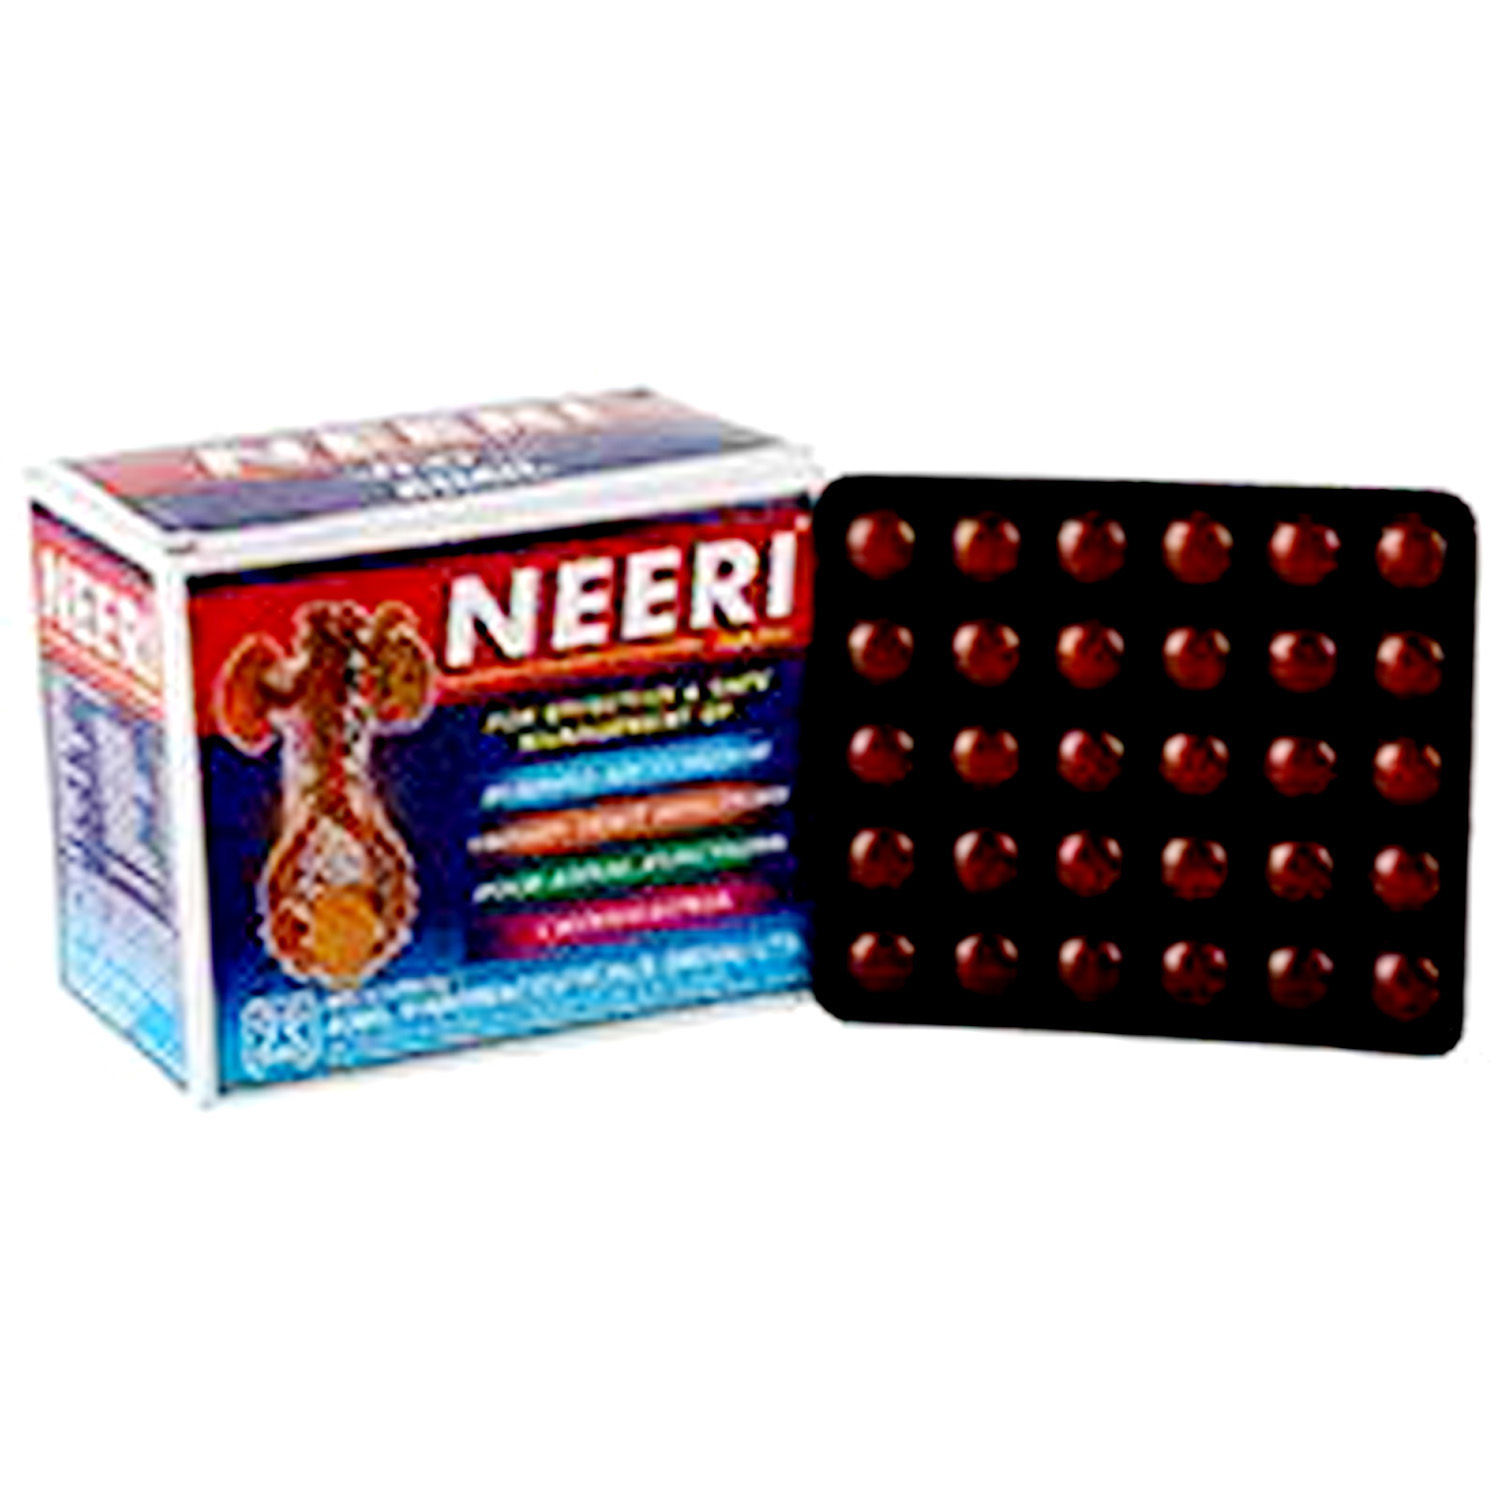 Neeri, 30 Tablets, Pack of 30 S